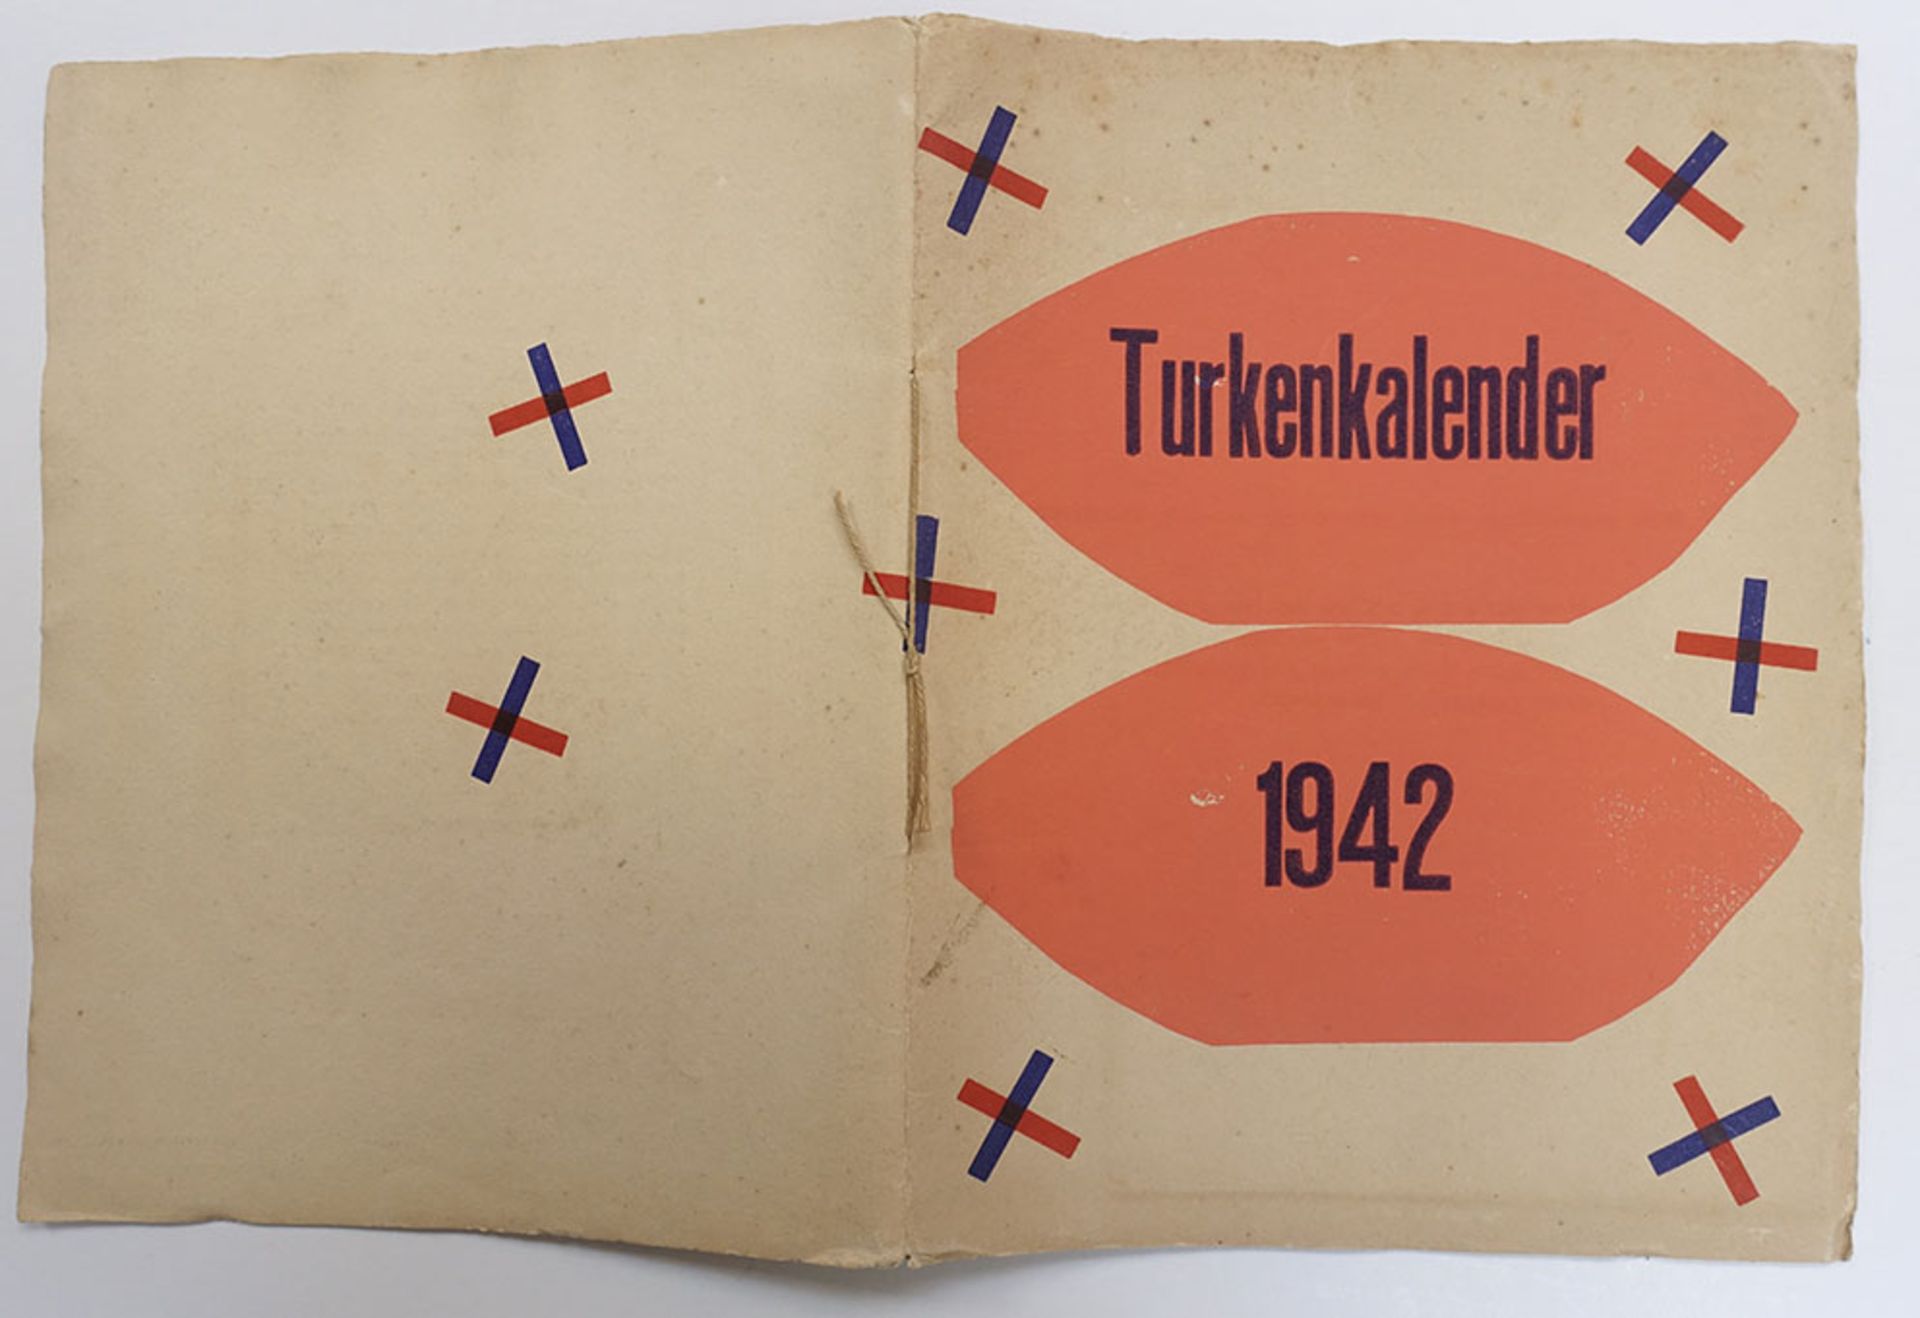 WERKMAN -- TURKENKALENDER 1942. (Samengest. d. A. Buning. N.pl. (Heerenveen), De Blauwe Schuit,